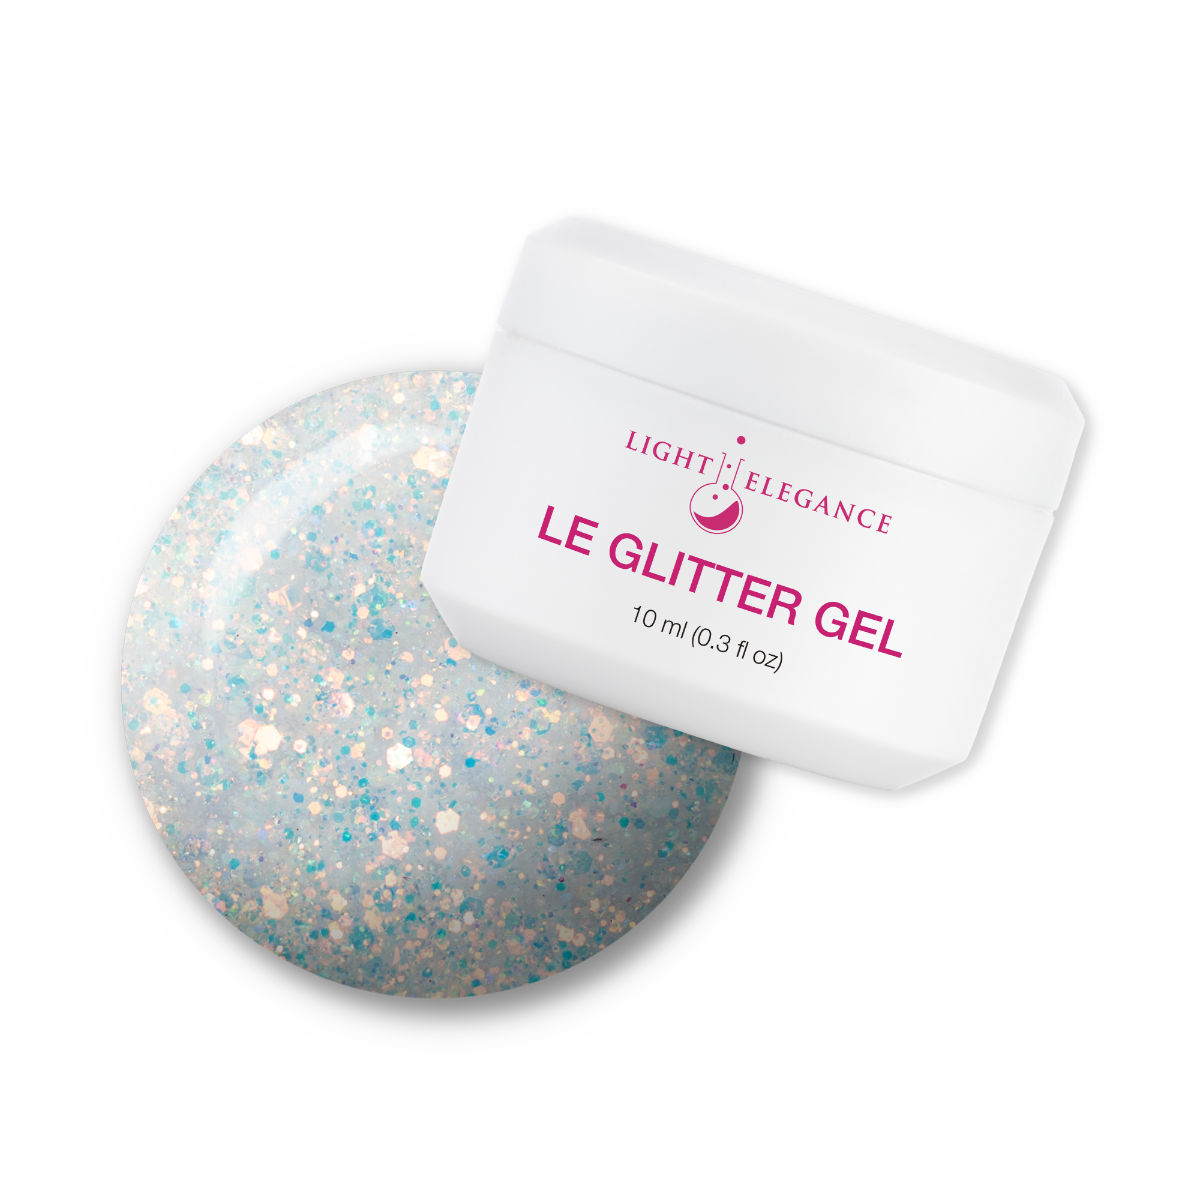 Light Elegance Glitter Gel - Swing by Sweden :: New Packaging